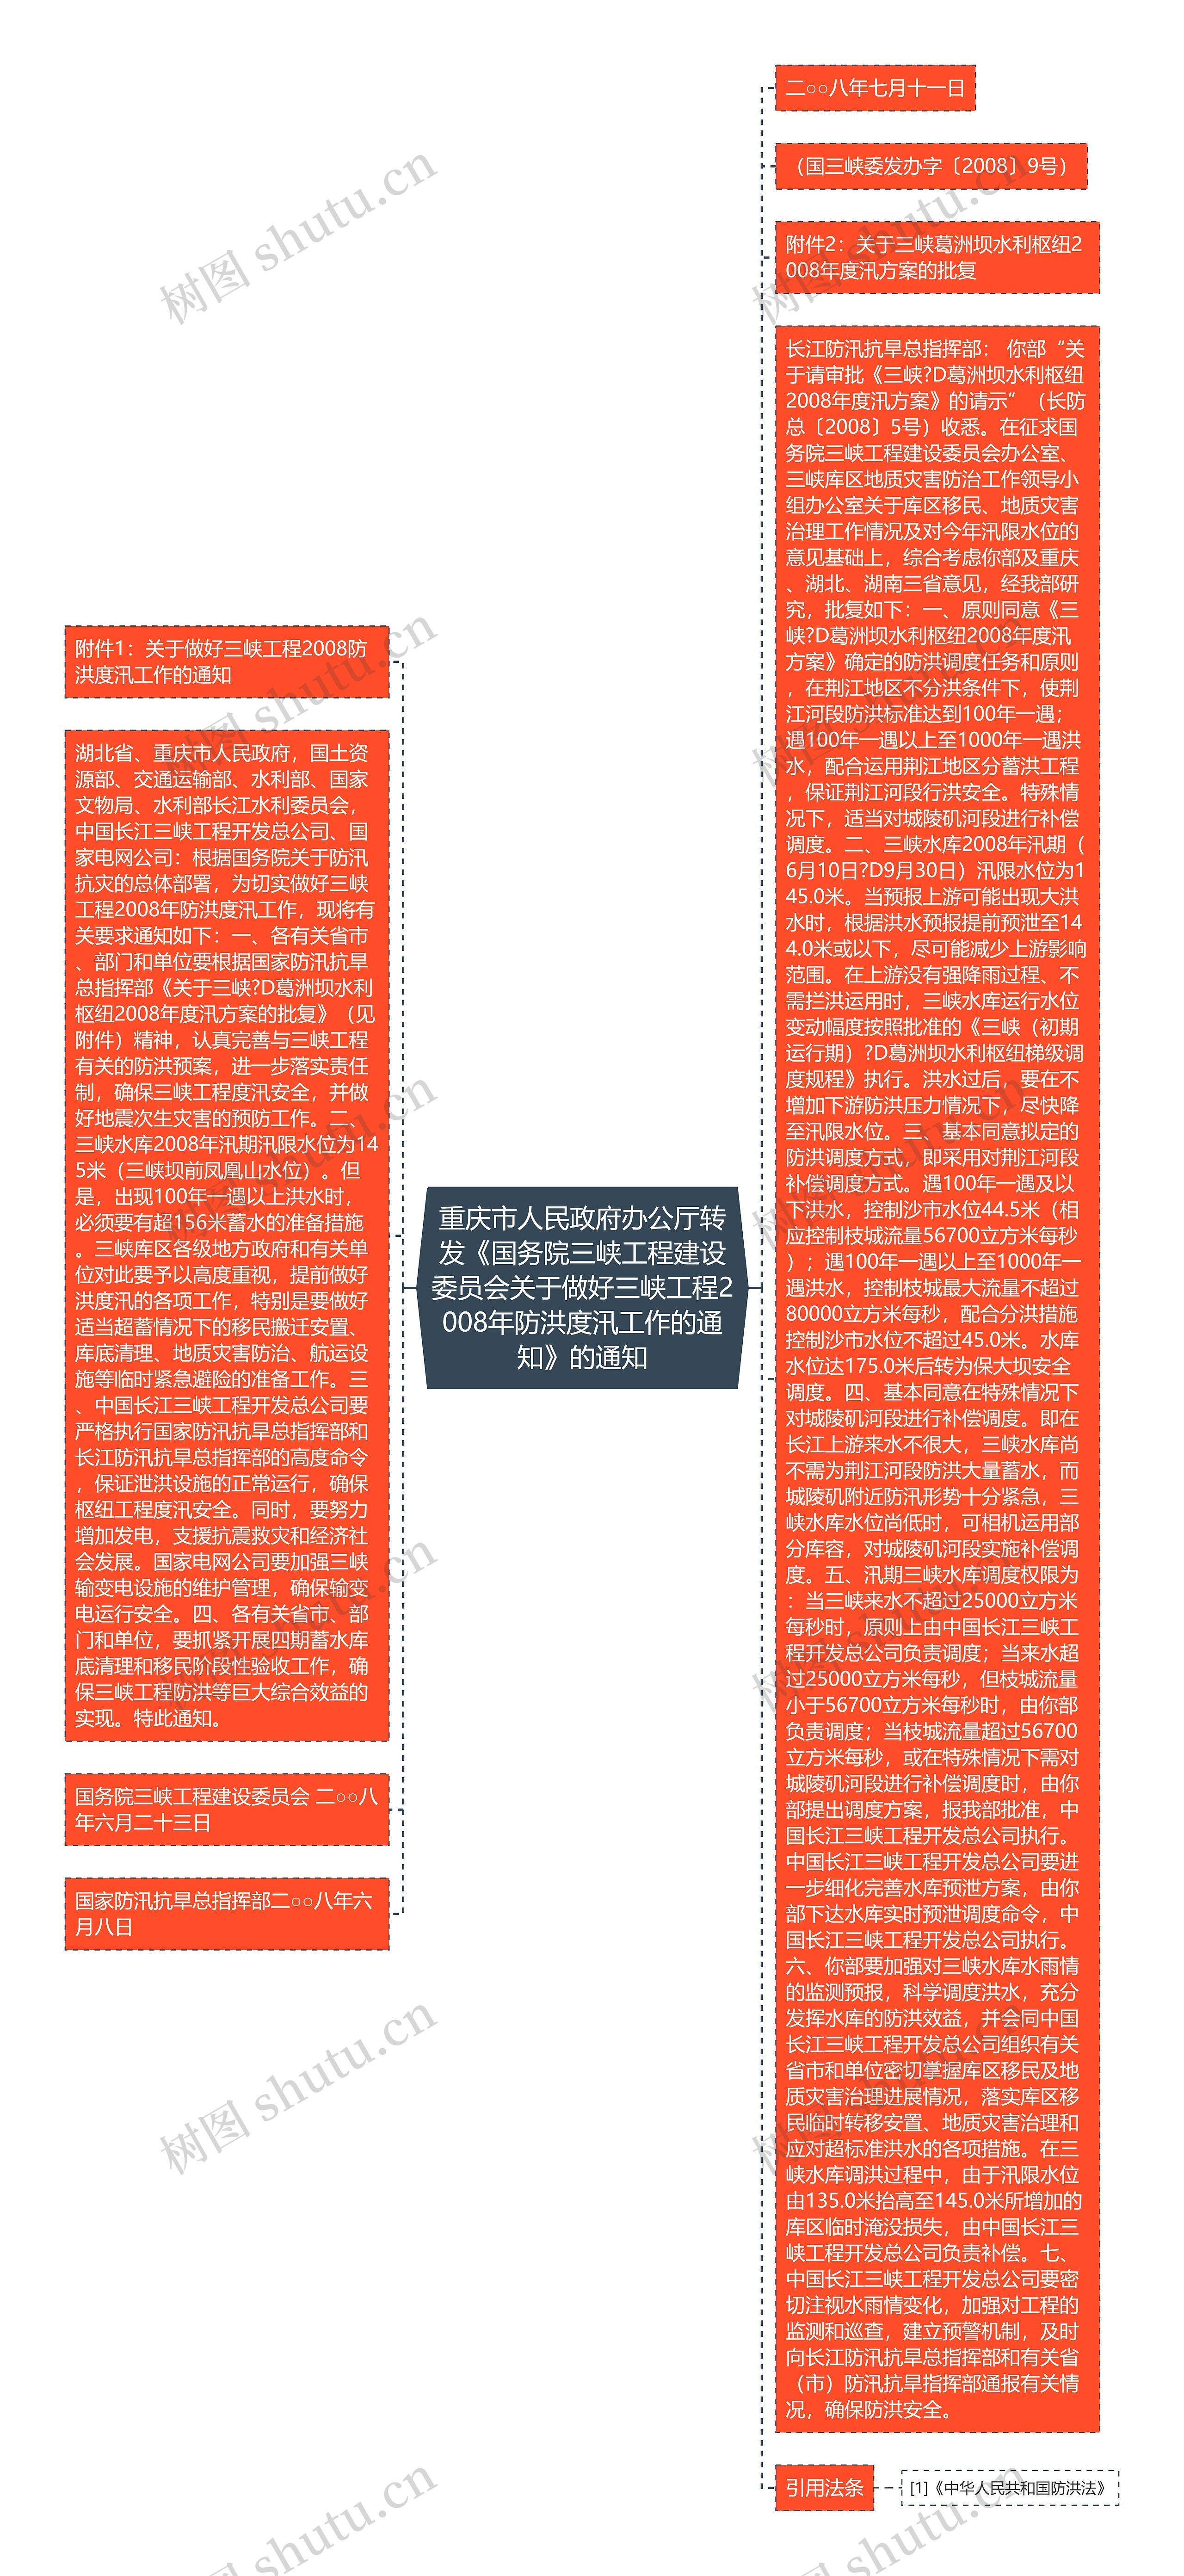 重庆市人民政府办公厅转发《国务院三峡工程建设委员会关于做好三峡工程2008年防洪度汛工作的通知》的通知